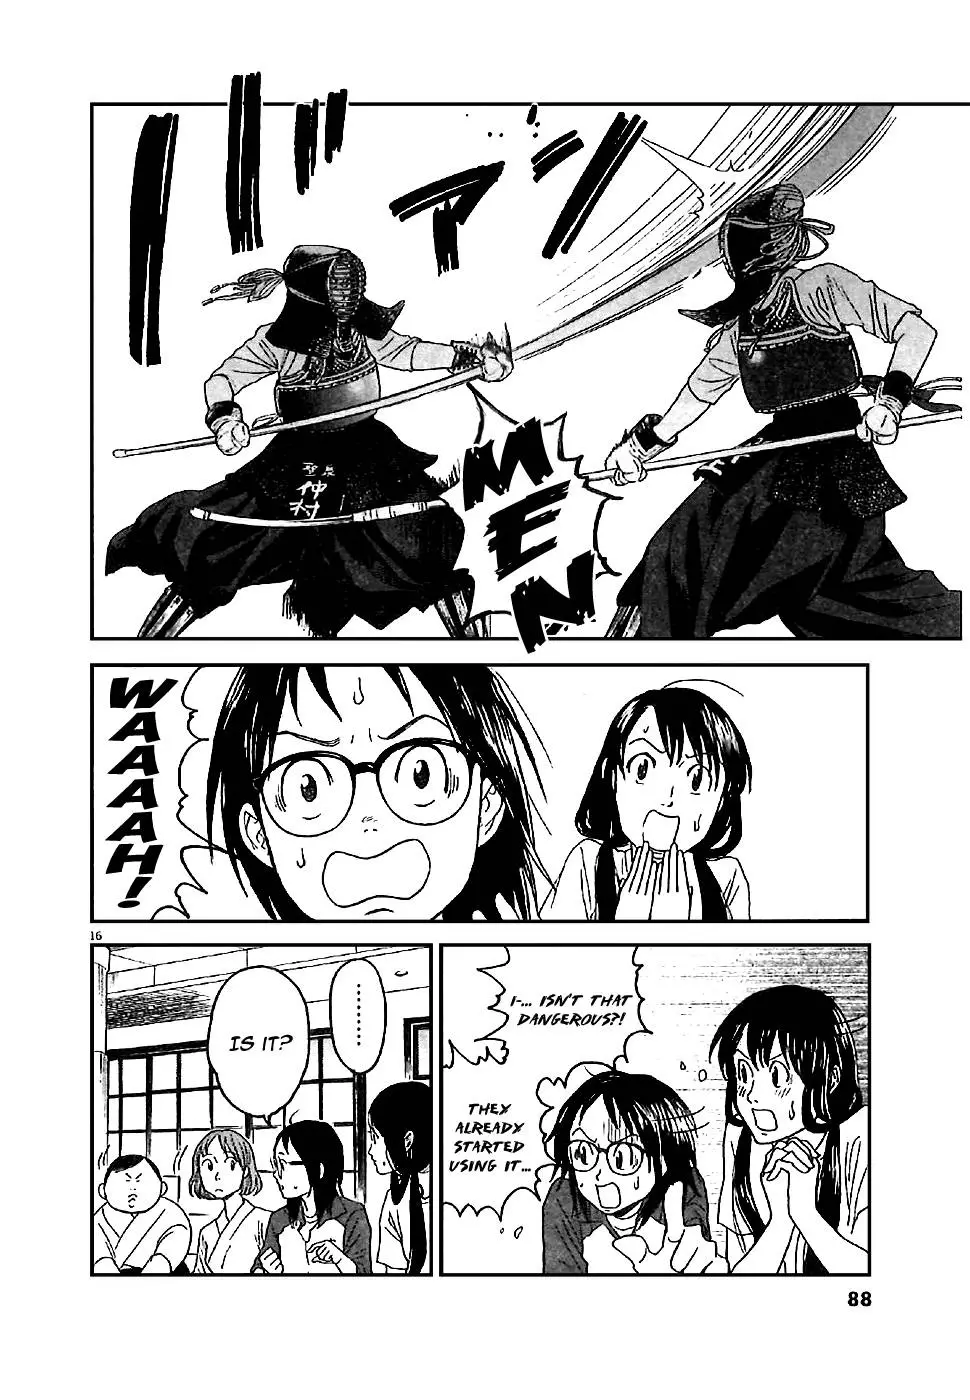 Asahinagu - 3 page p_00018